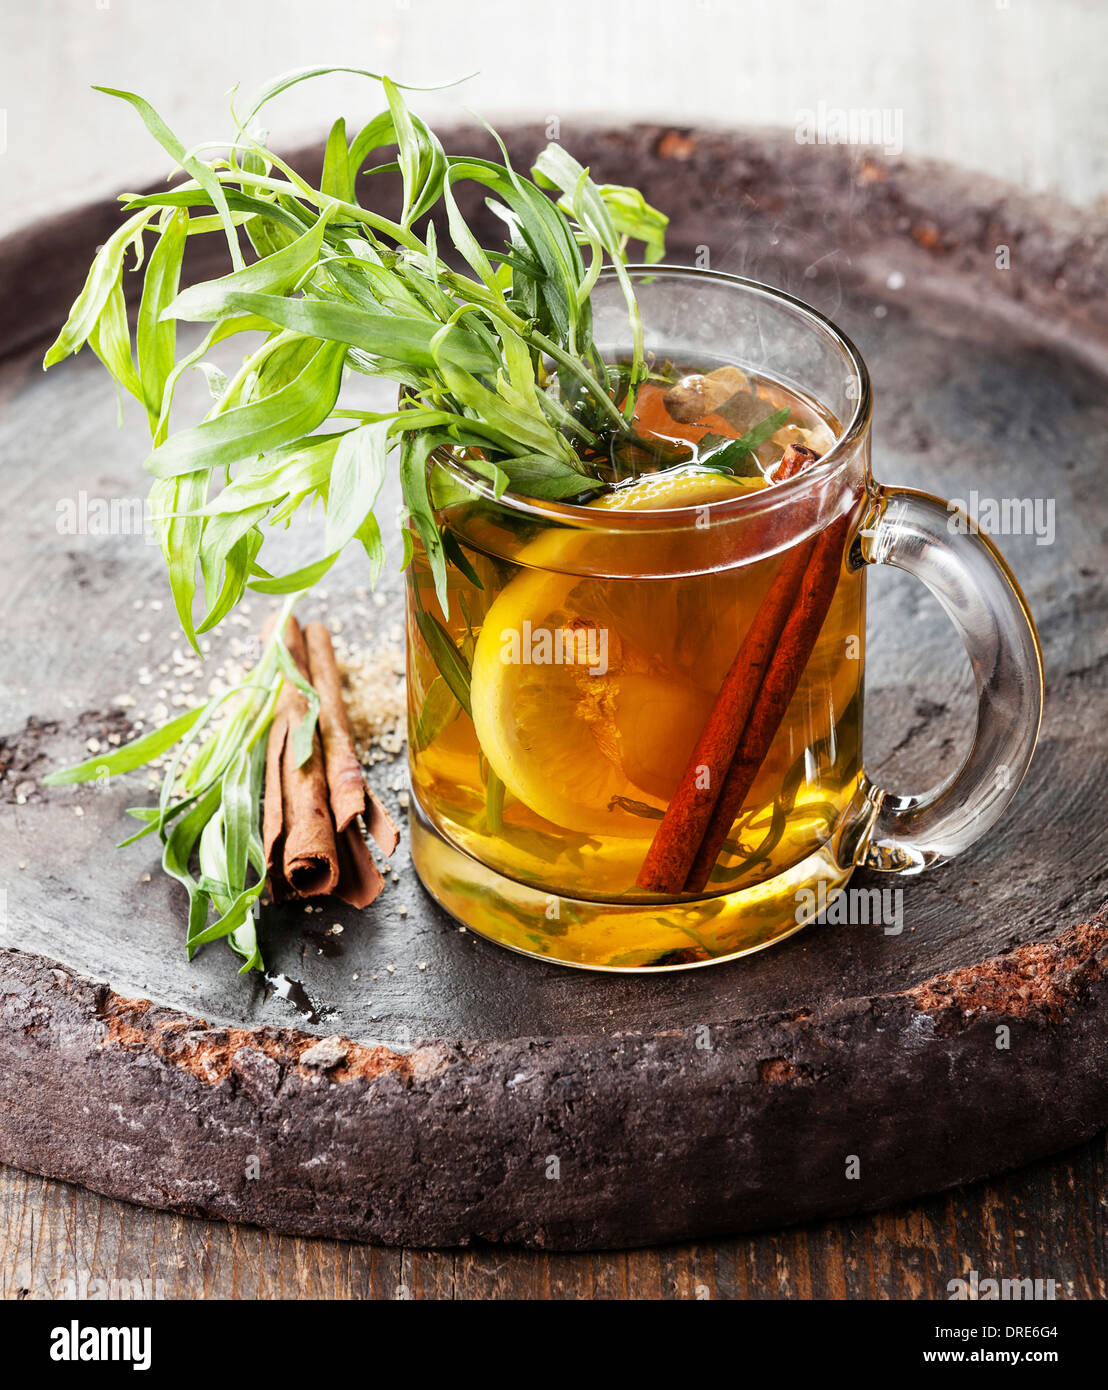 Estragon heißes Getränk Tee mit Honig, Zitrone und Zimt auf dunklem Hintergrund Stockfoto